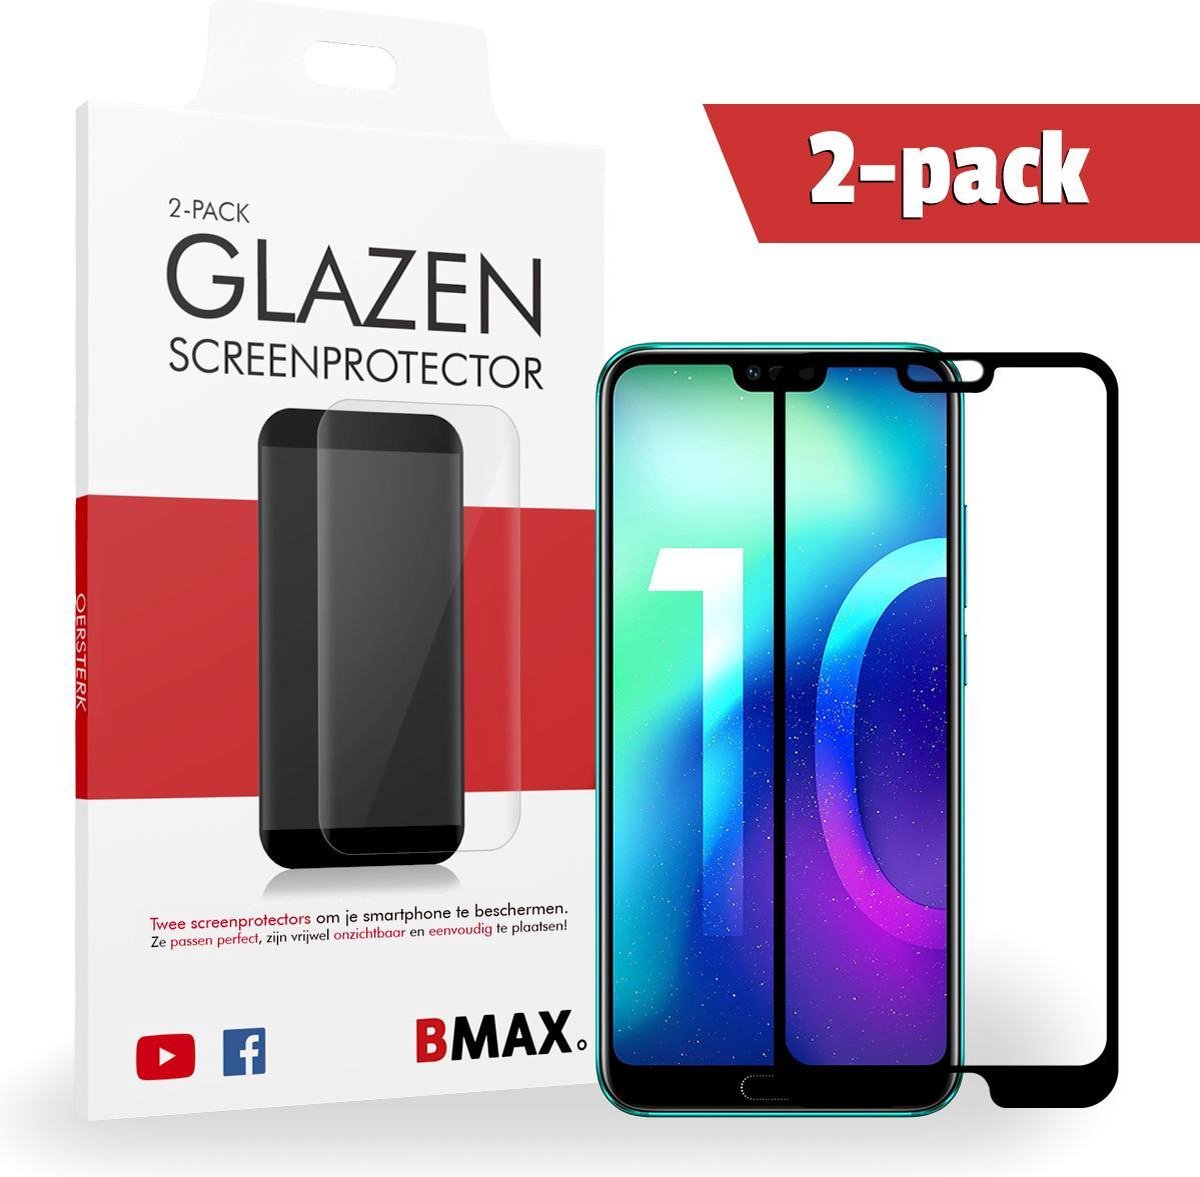 2-pack Bmax Honor 10 Screenprotector - Glass - Full Cover 2.5d - Black